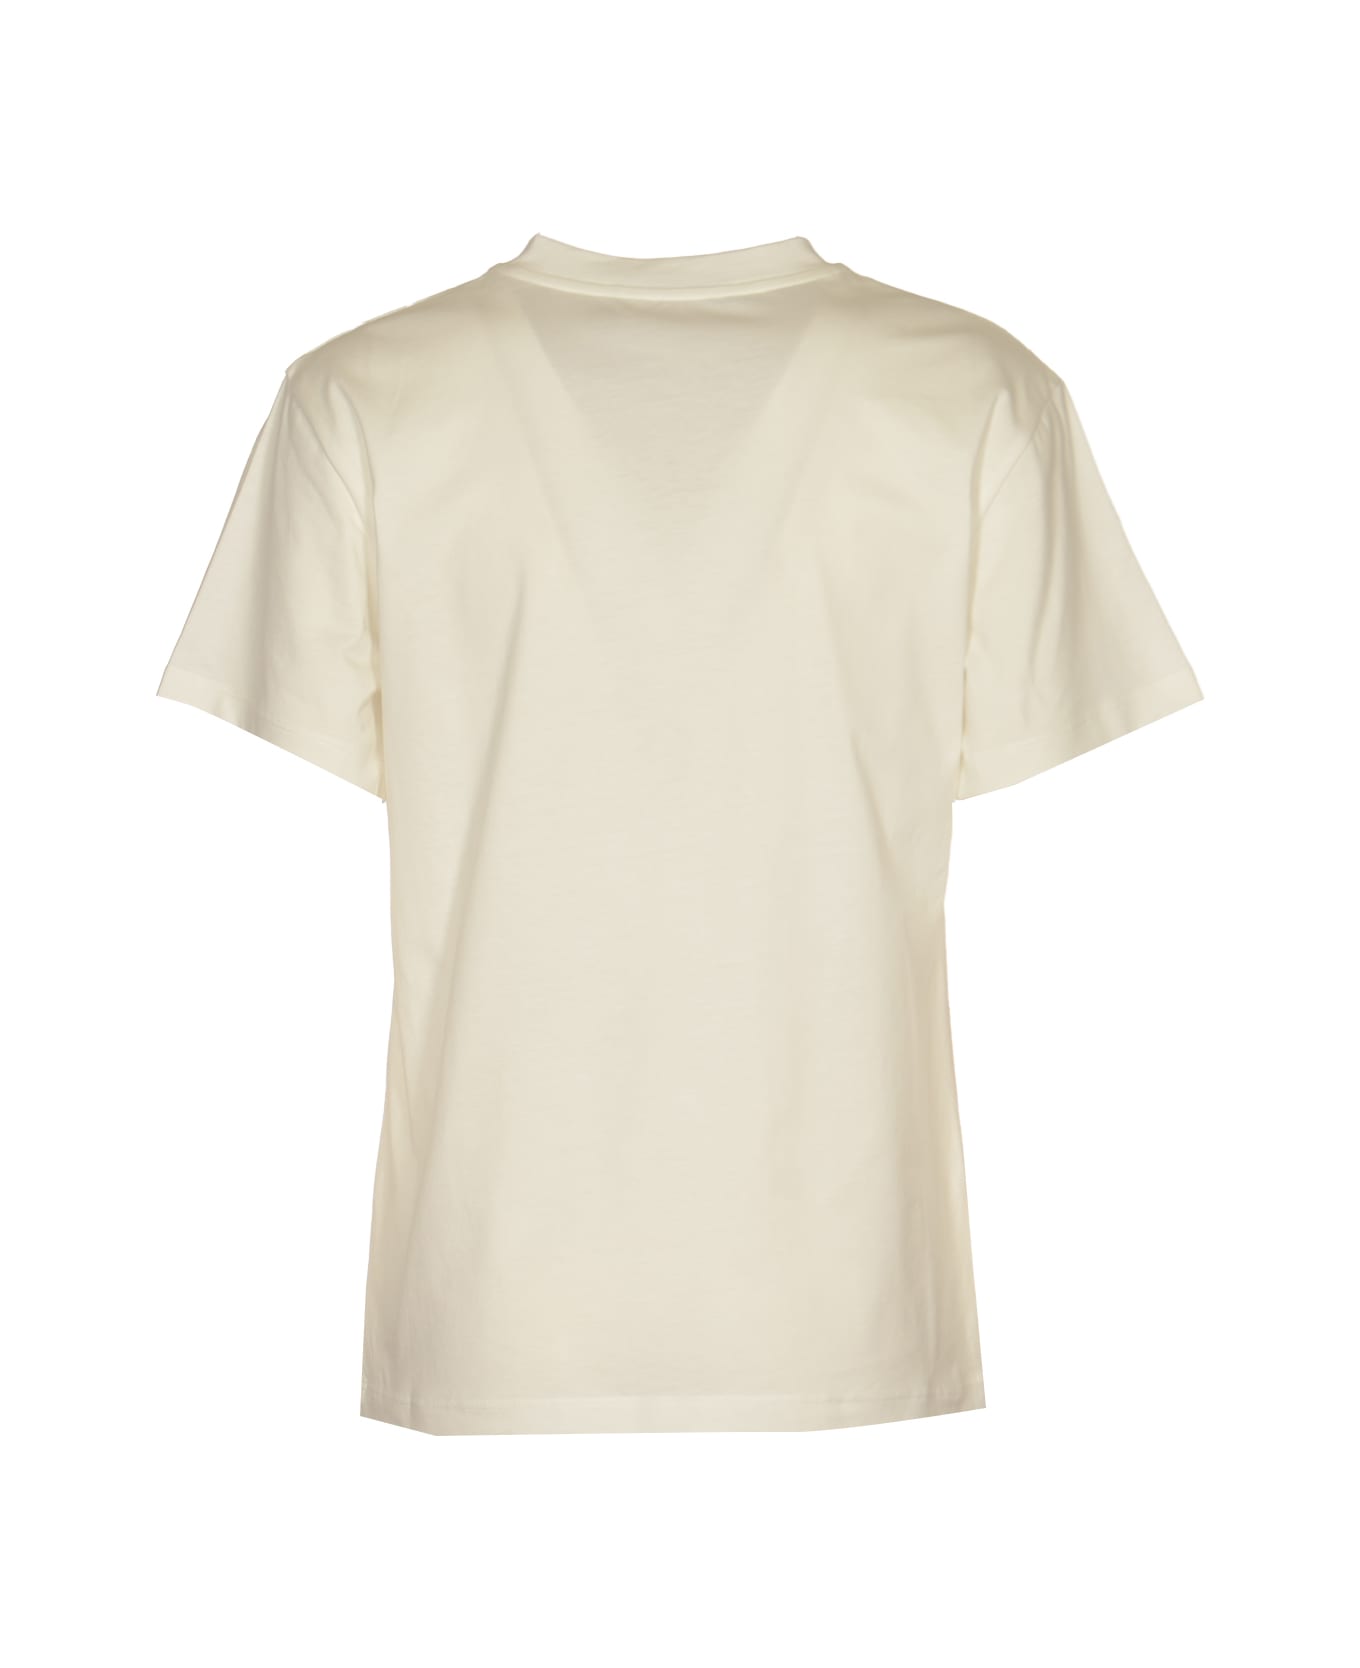 Alberta Ferretti Logo Printed T-shirt - FANTASIA ORO LUCIDO Tシャツ